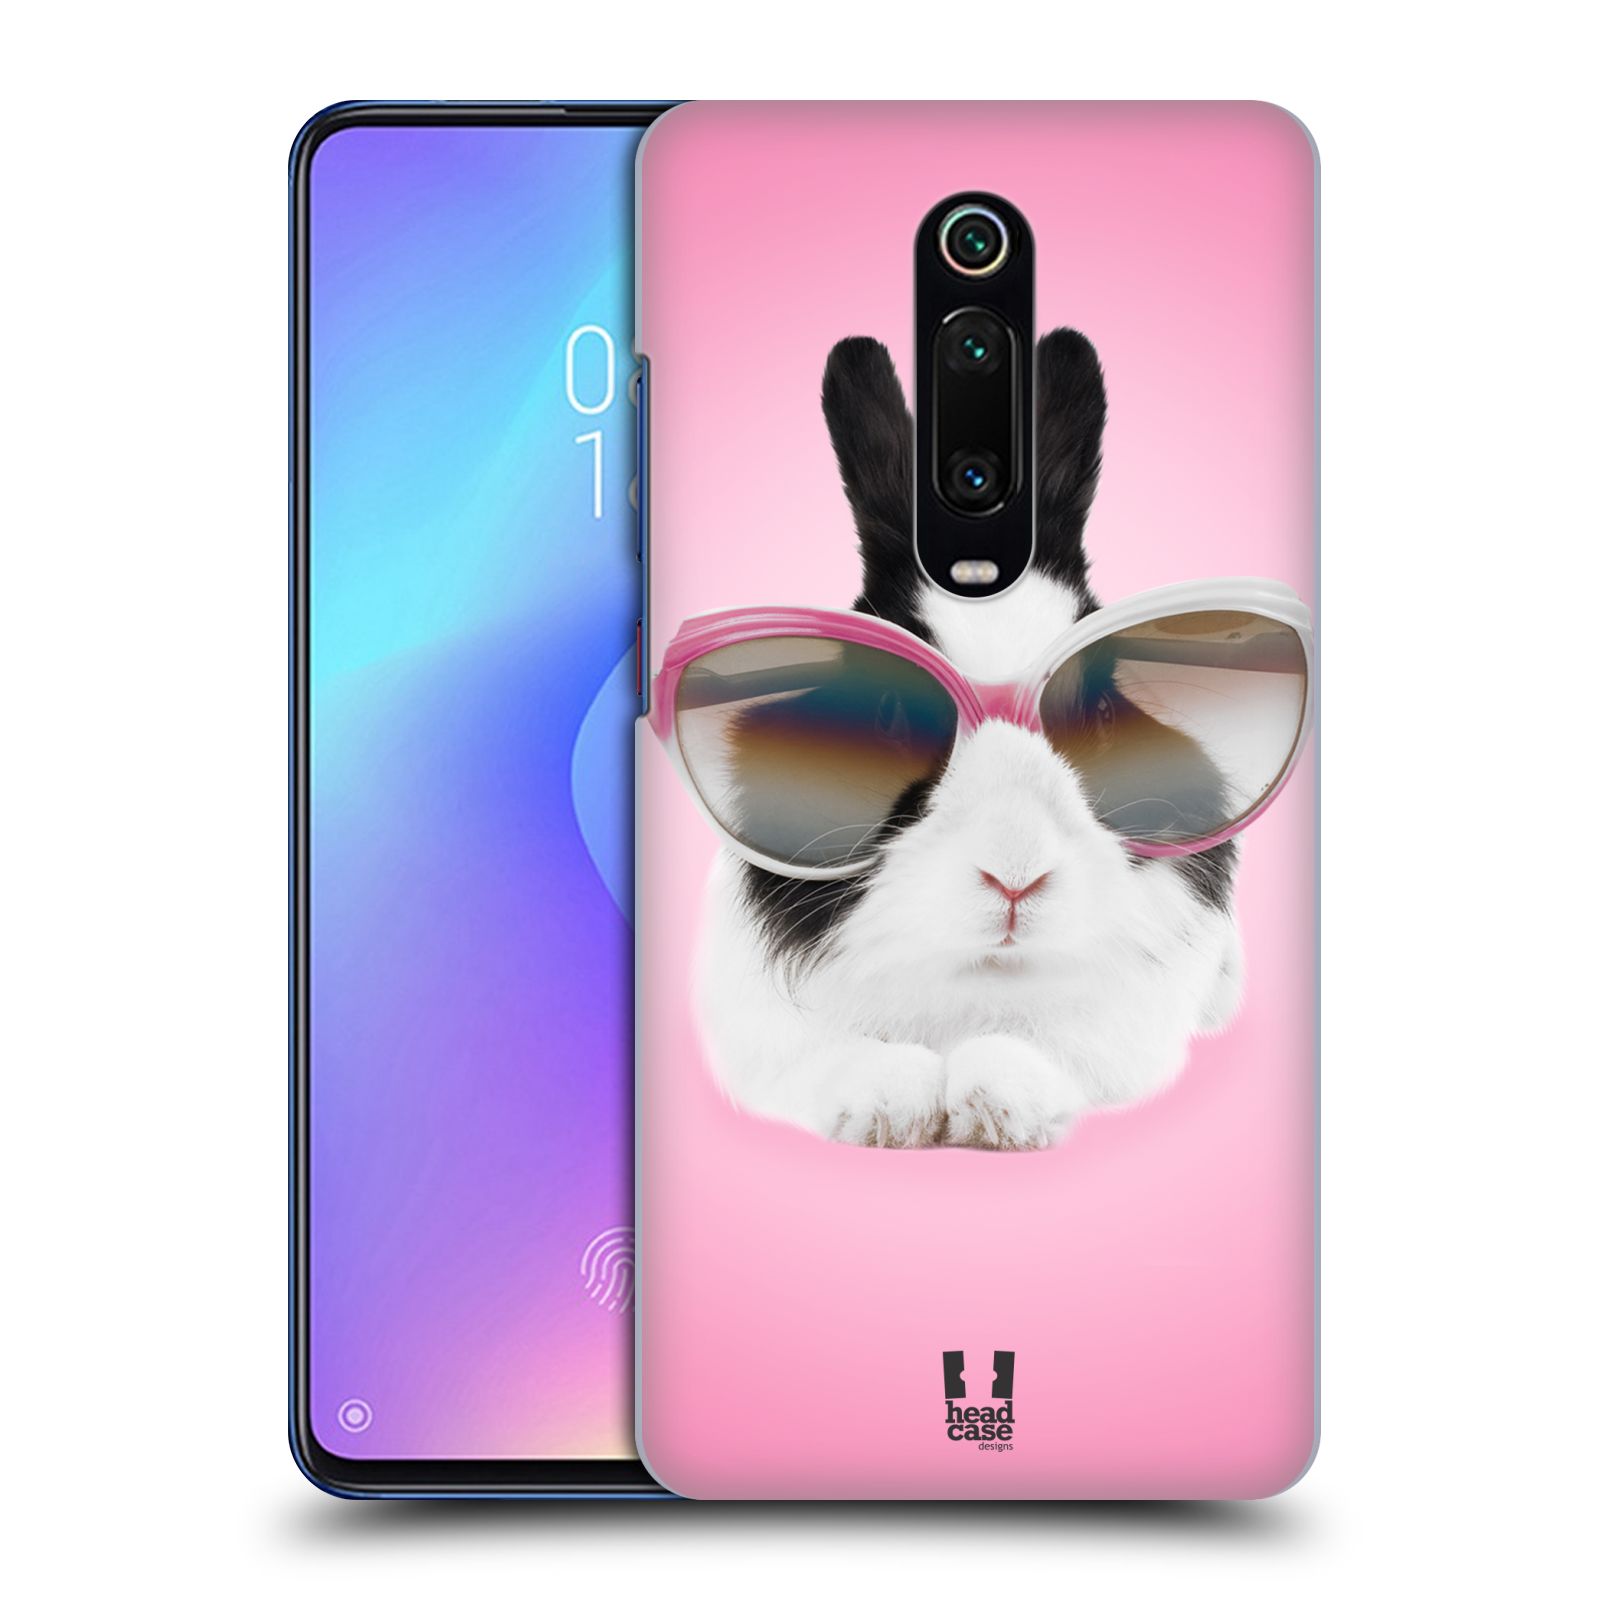 Pouzdro na mobil Xiaomi Mi 9T PRO - HEAD CASE - vzor Legrační zvířátka roztomilý králíček s brýlemi růžová